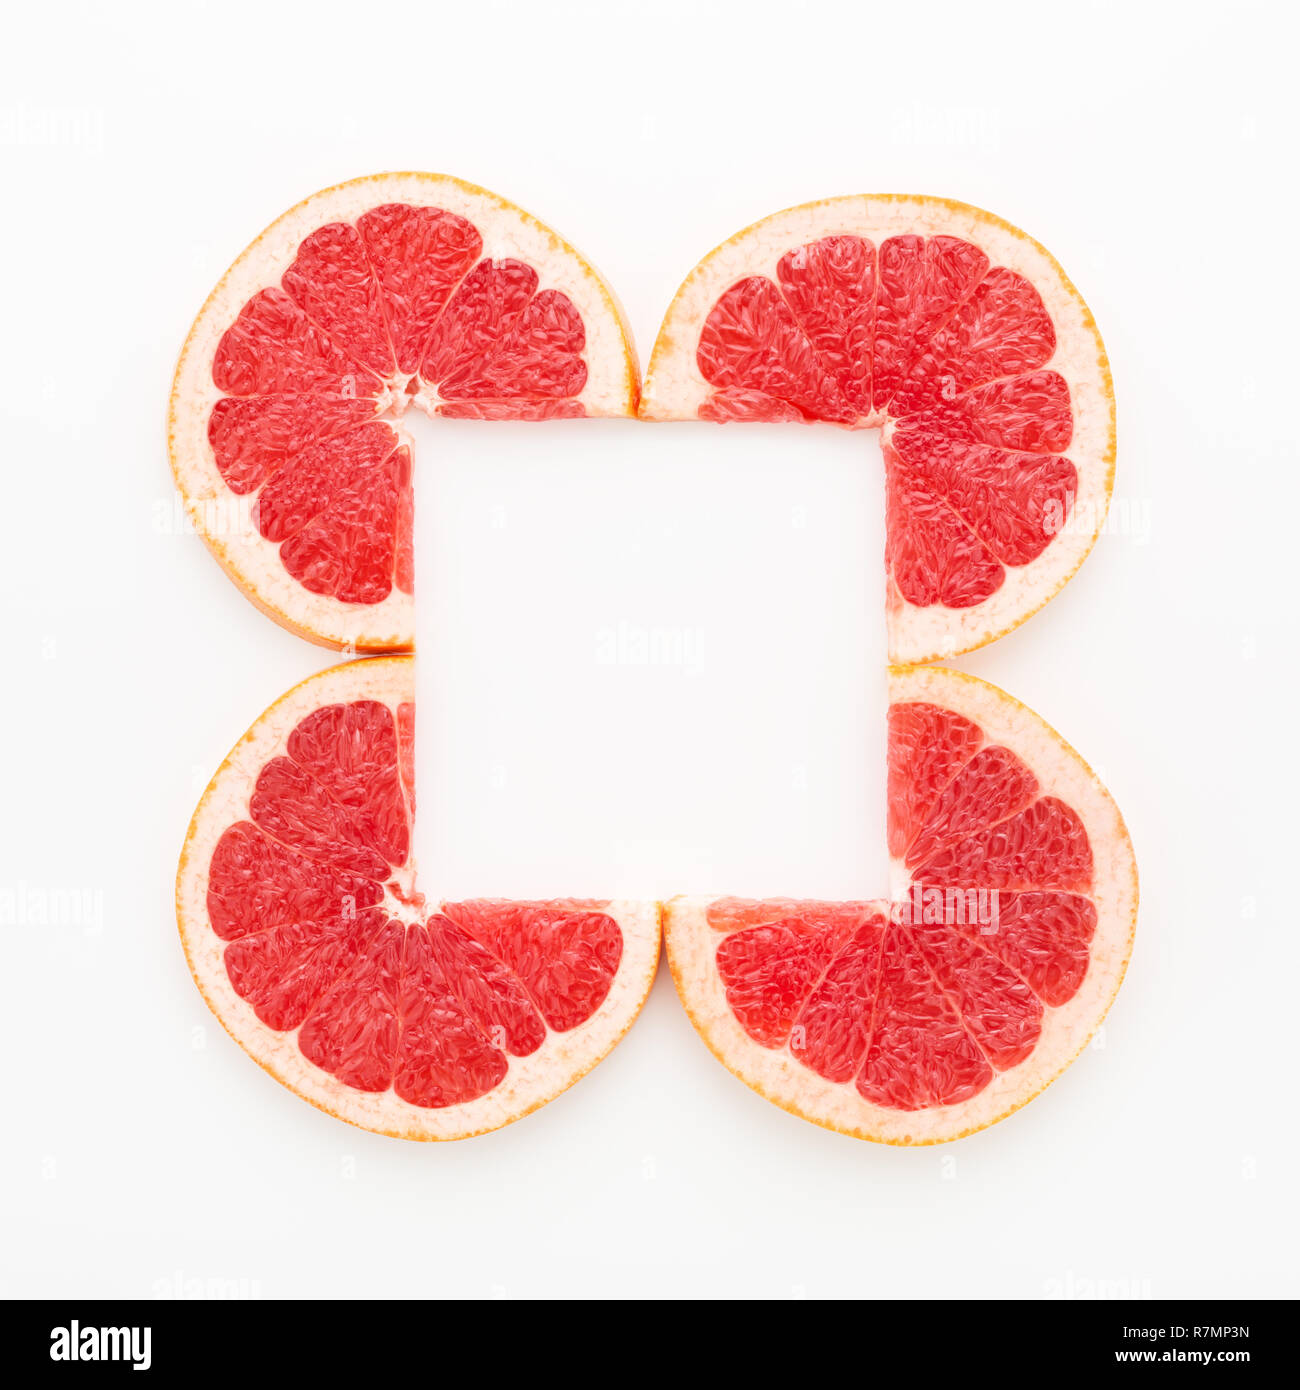 Kreative Rahmen der geschnitzten Grapefruit Schichten für lebende Koralle Farbe auf weißem Hintergrund. Minimal, Flach, kopieren. Stockfoto